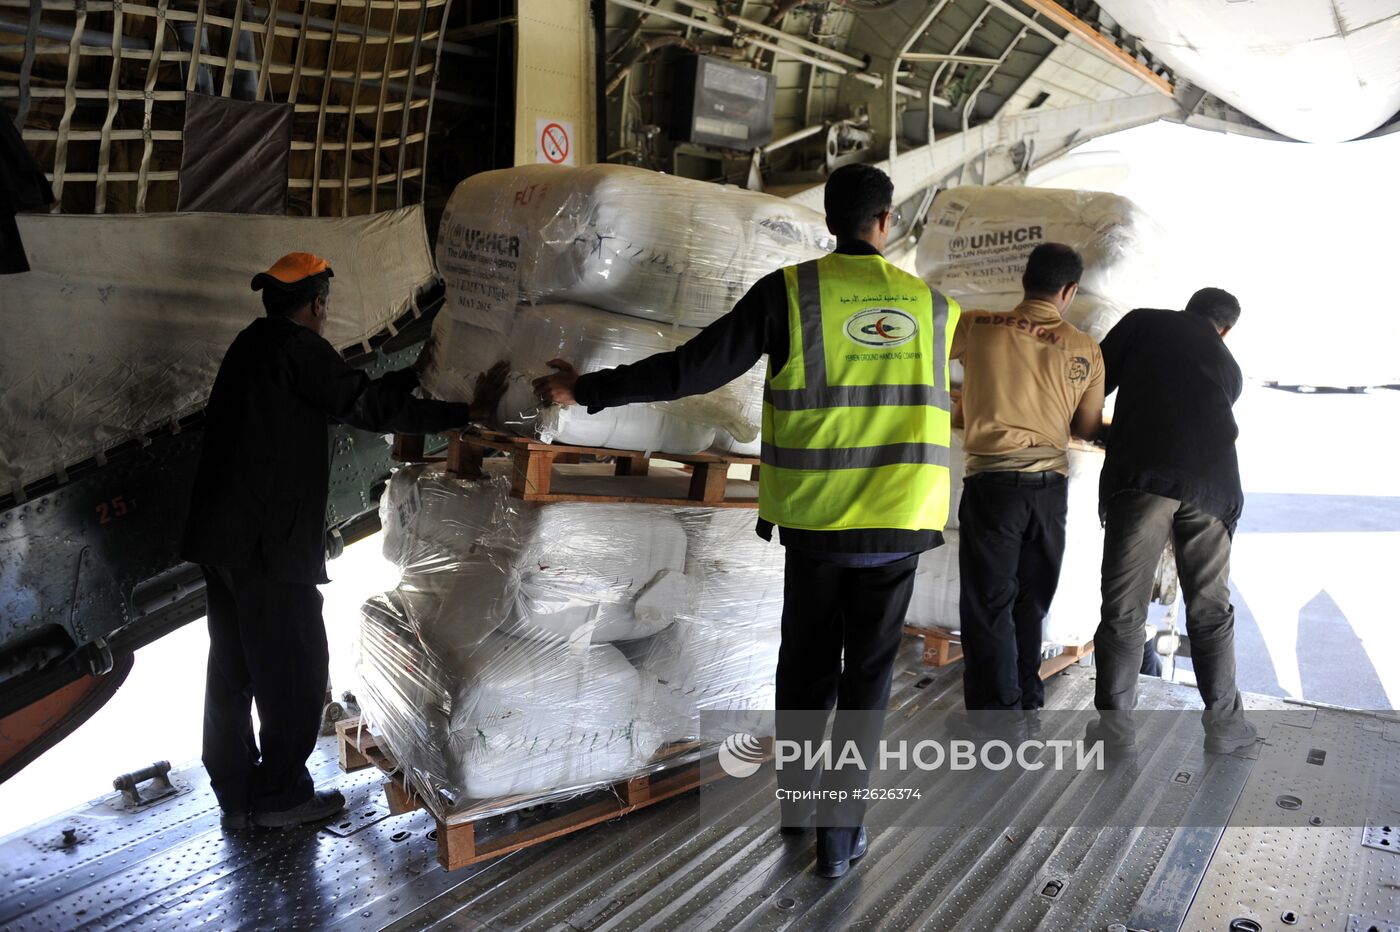 В Йемен доставлена гуманитарная помощь ООН